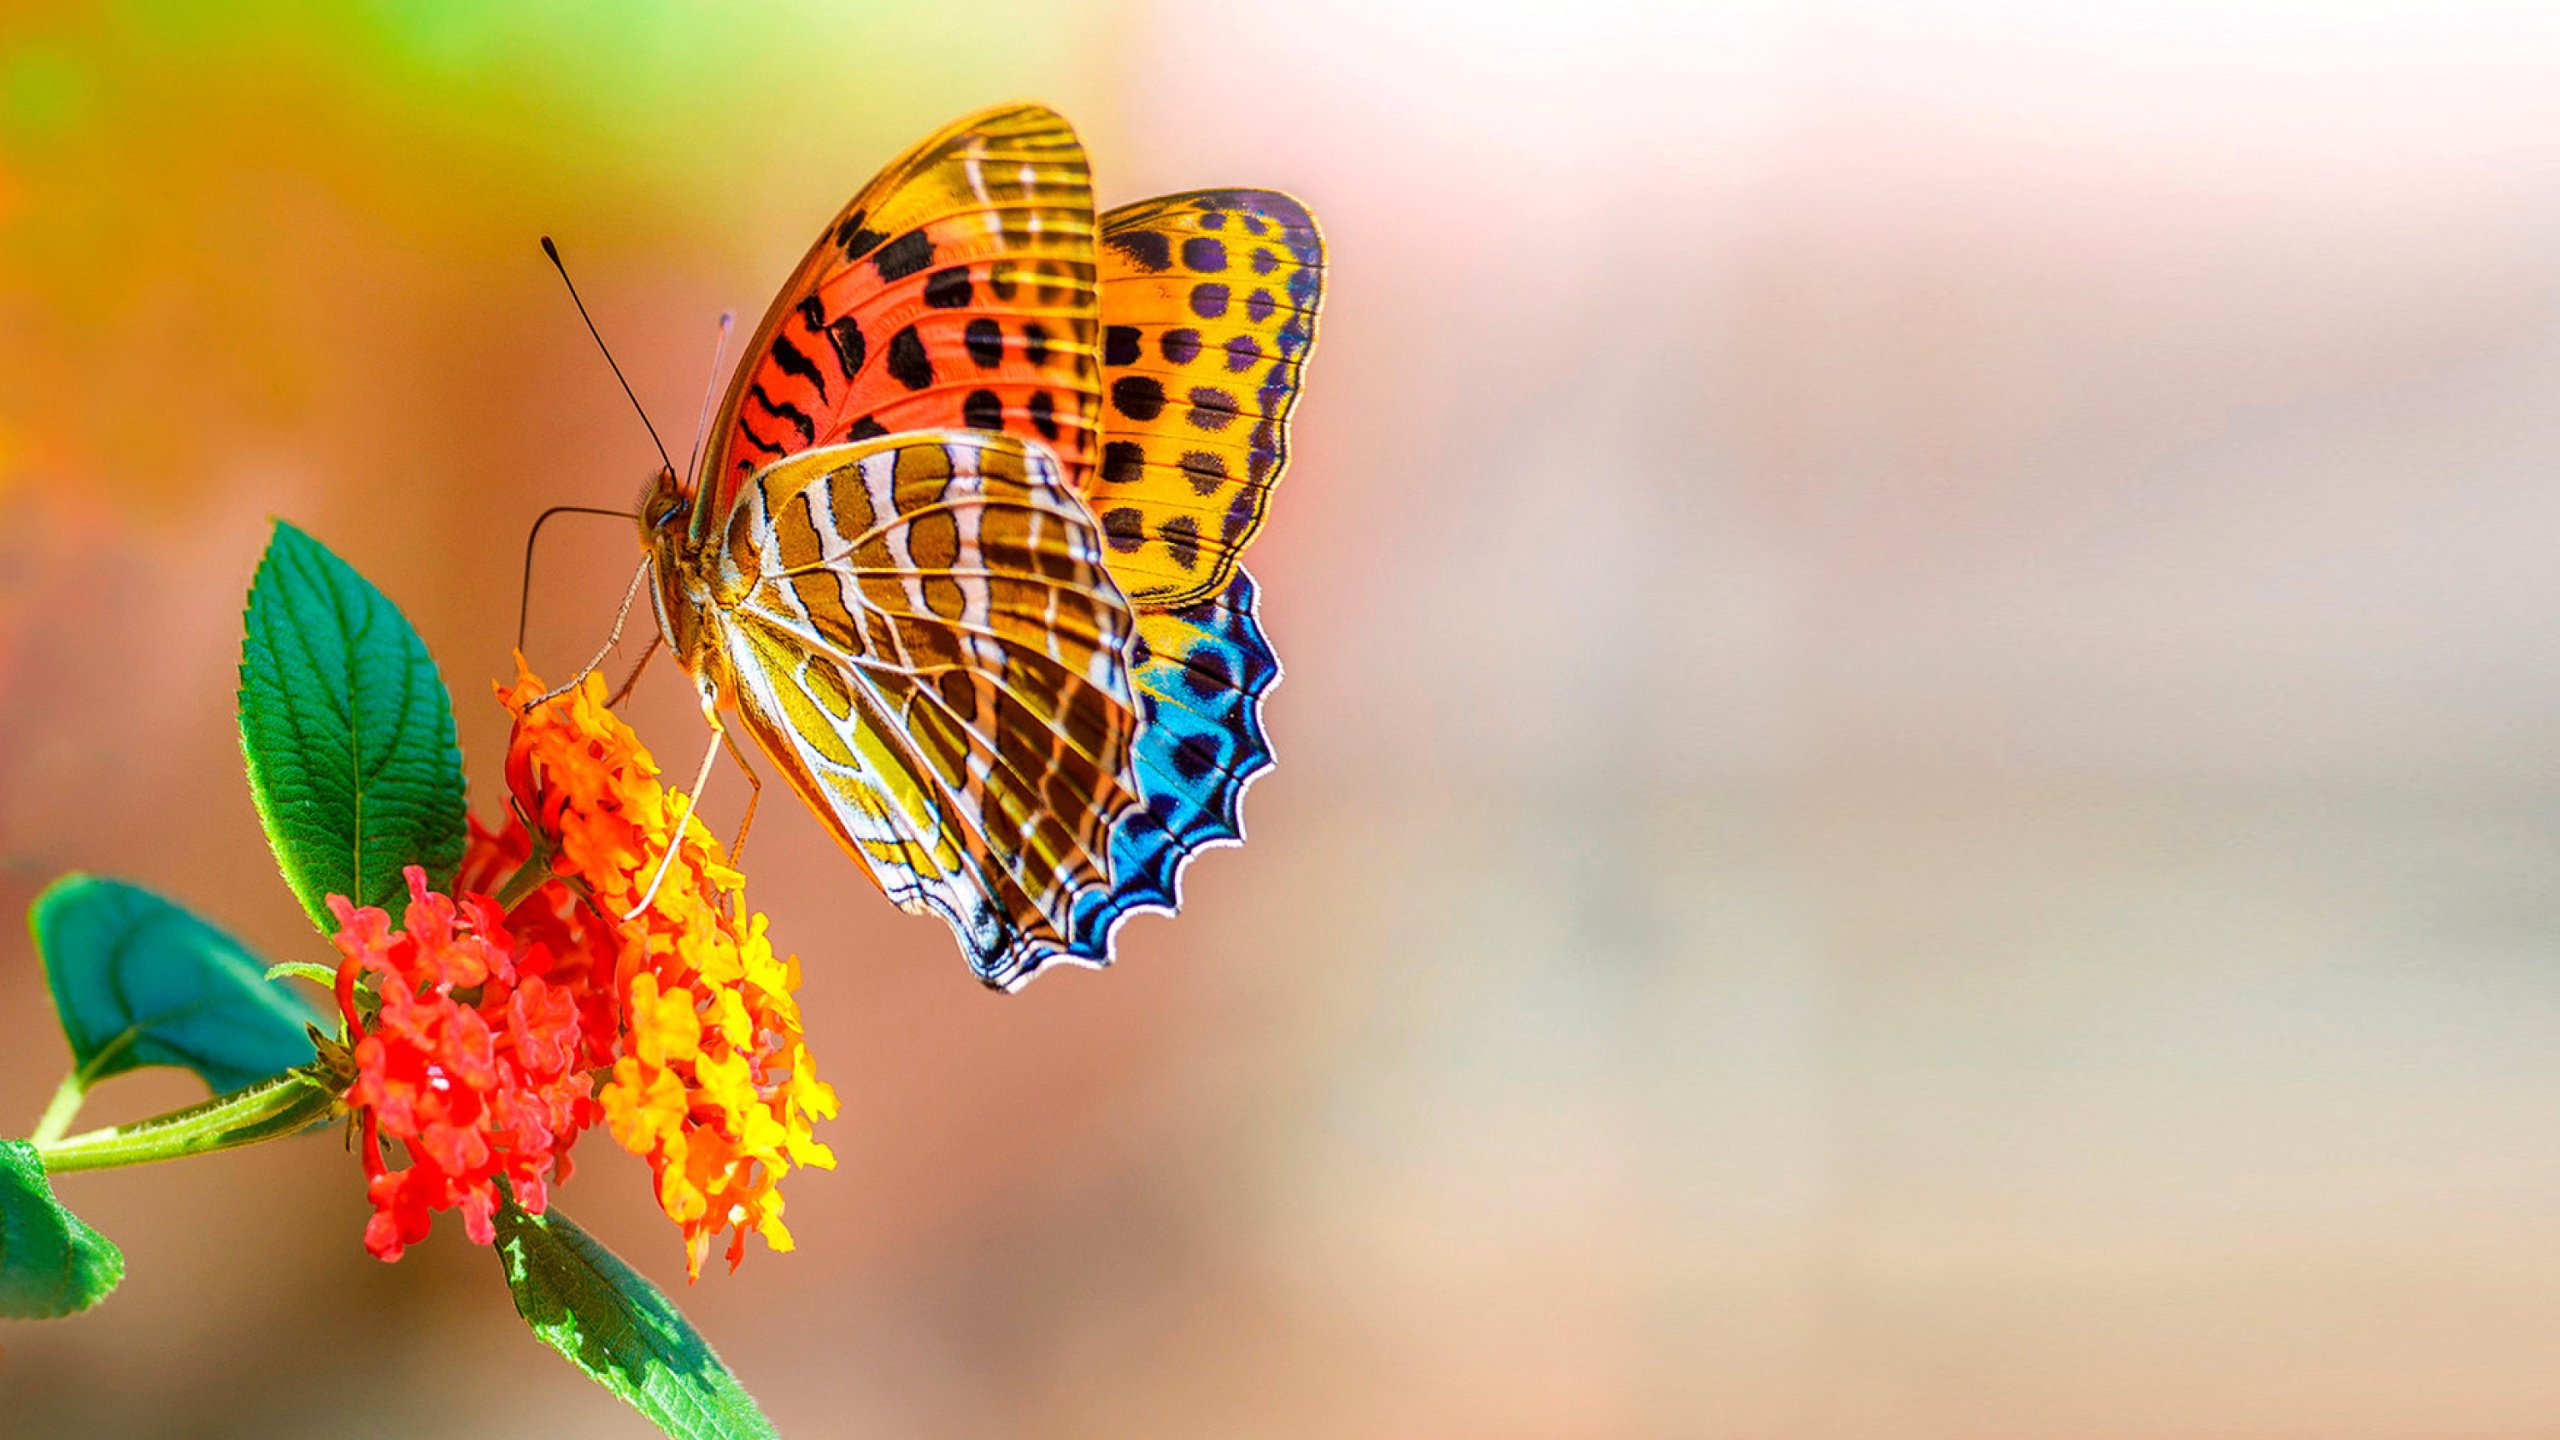 Fondos de Pantalla Mariposa Naranja y Negra Encaramada Sobre Flor Amarilla,  Imágenes y Fotos Gratis